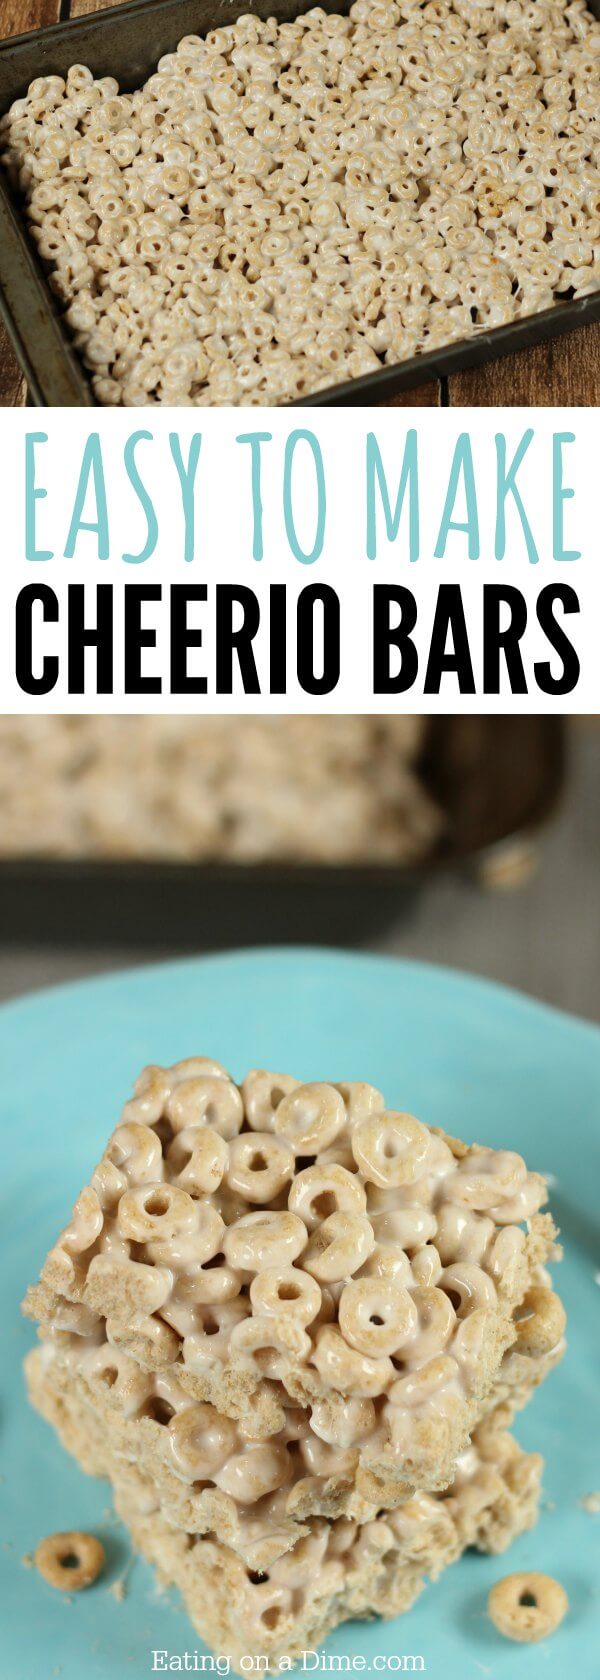 cheerio bars recipe